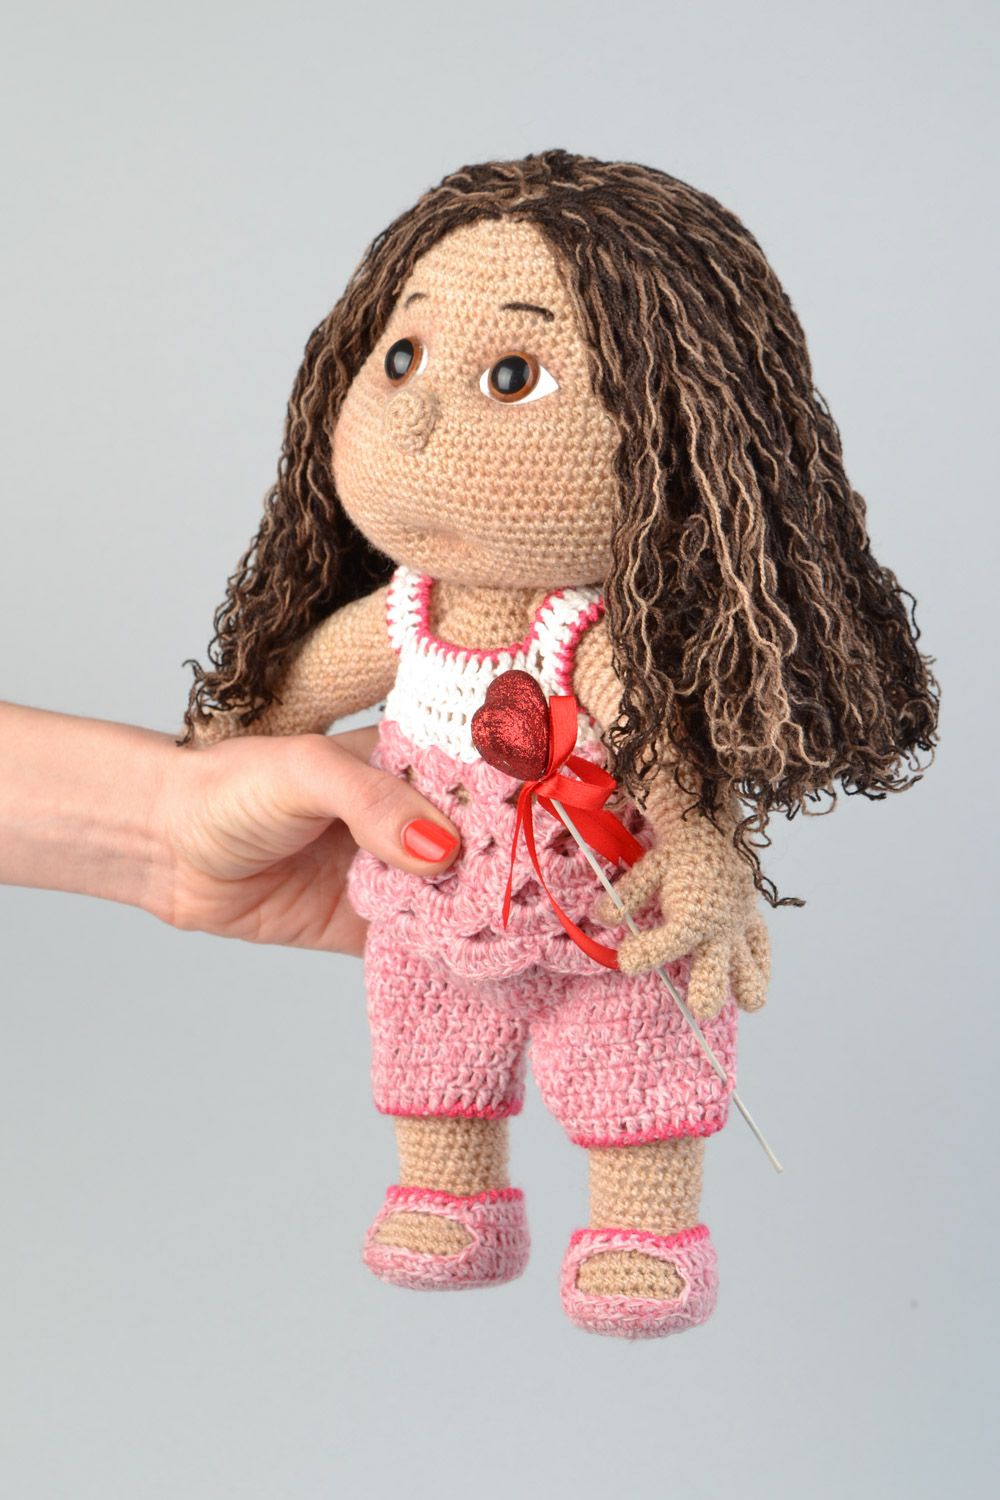 Handmade soft crochet toy girl doll for children photo 2